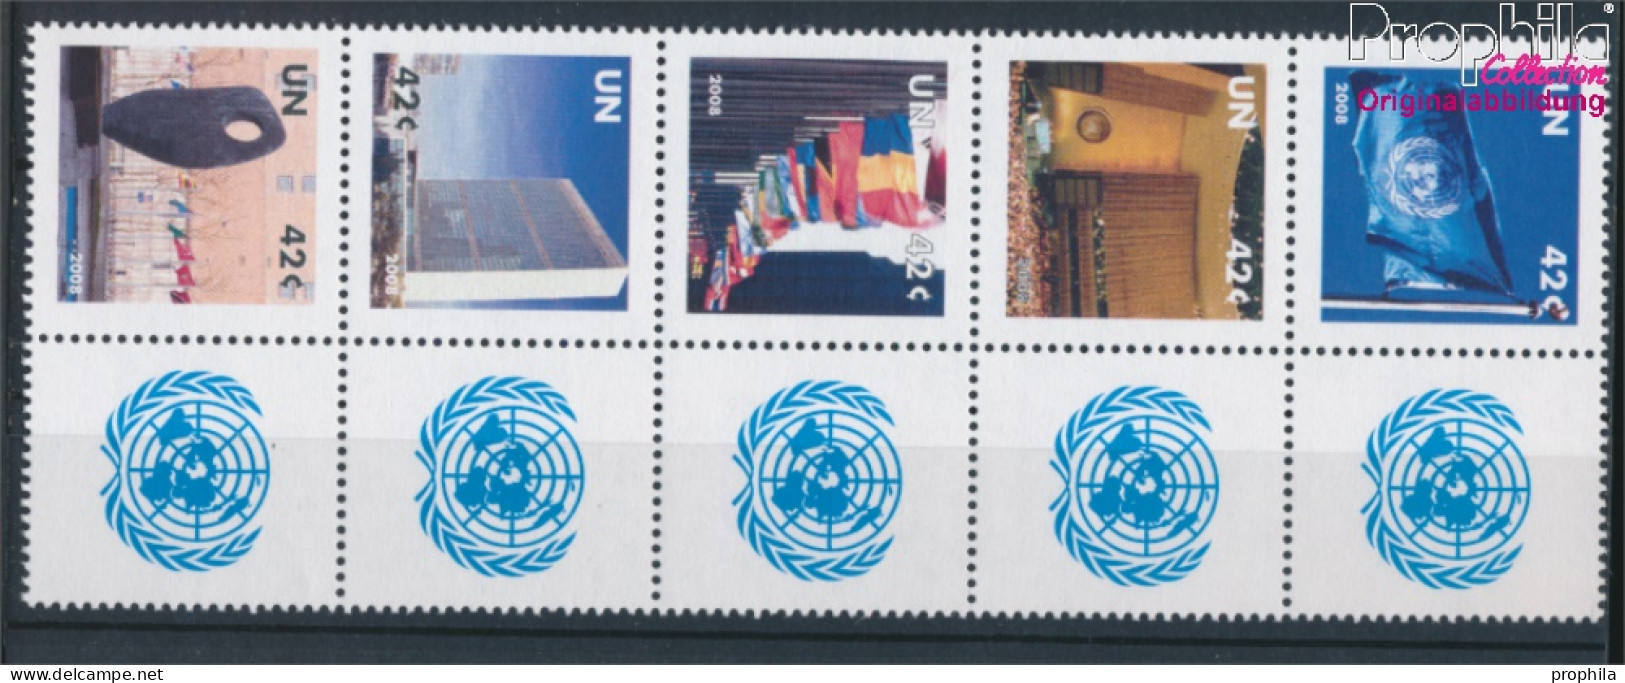 UNO - New York 1091-1095 Zehnerblock (kompl.Ausg.) Postfrisch 2008 Grußmarken (10325900 - Nuovi